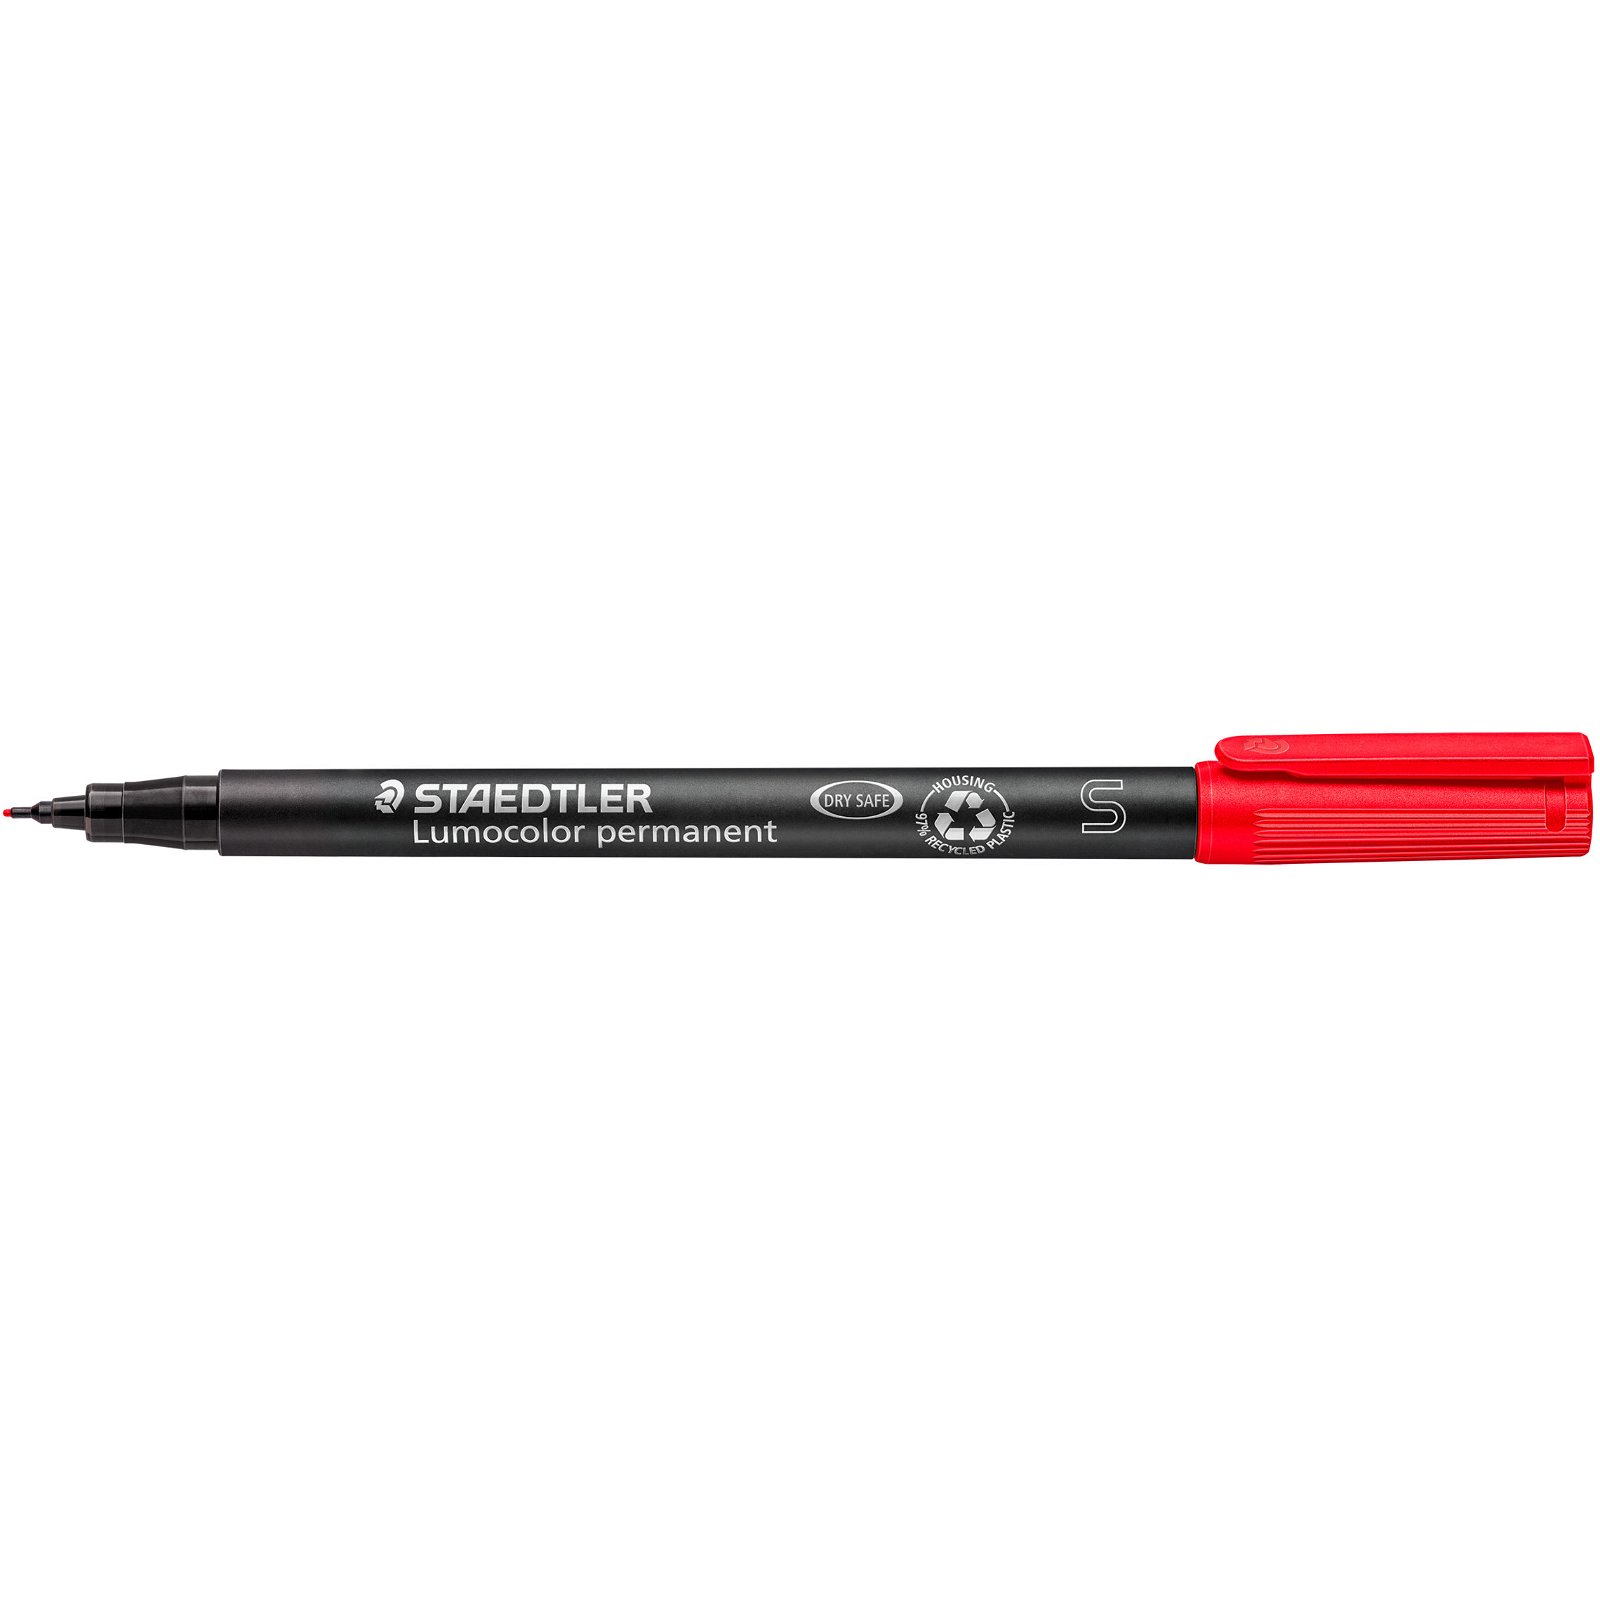 STAEDTLER Lumocolor 313 universal permanent pen